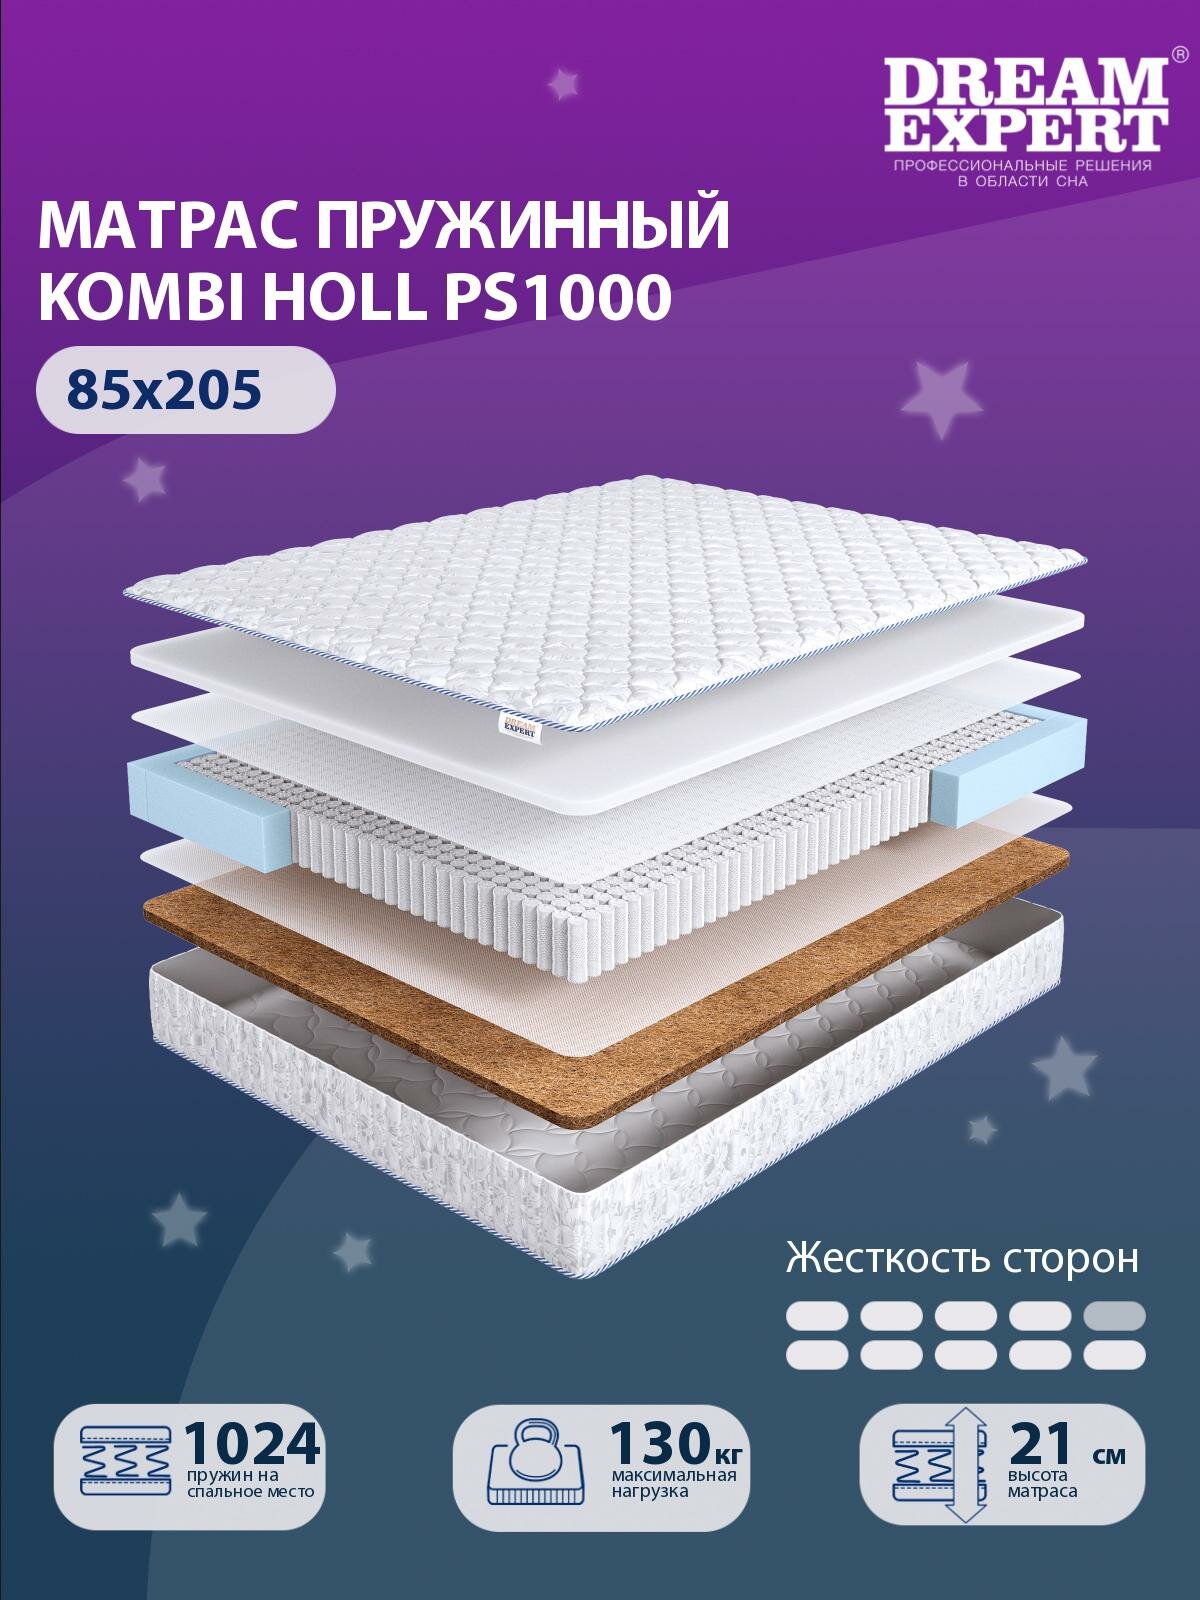 Матрас DreamExpert Kombi Holl PS1000 жесткость высокая и выше средней, односпальный, независимый пружинный блок, на кровать 85x205